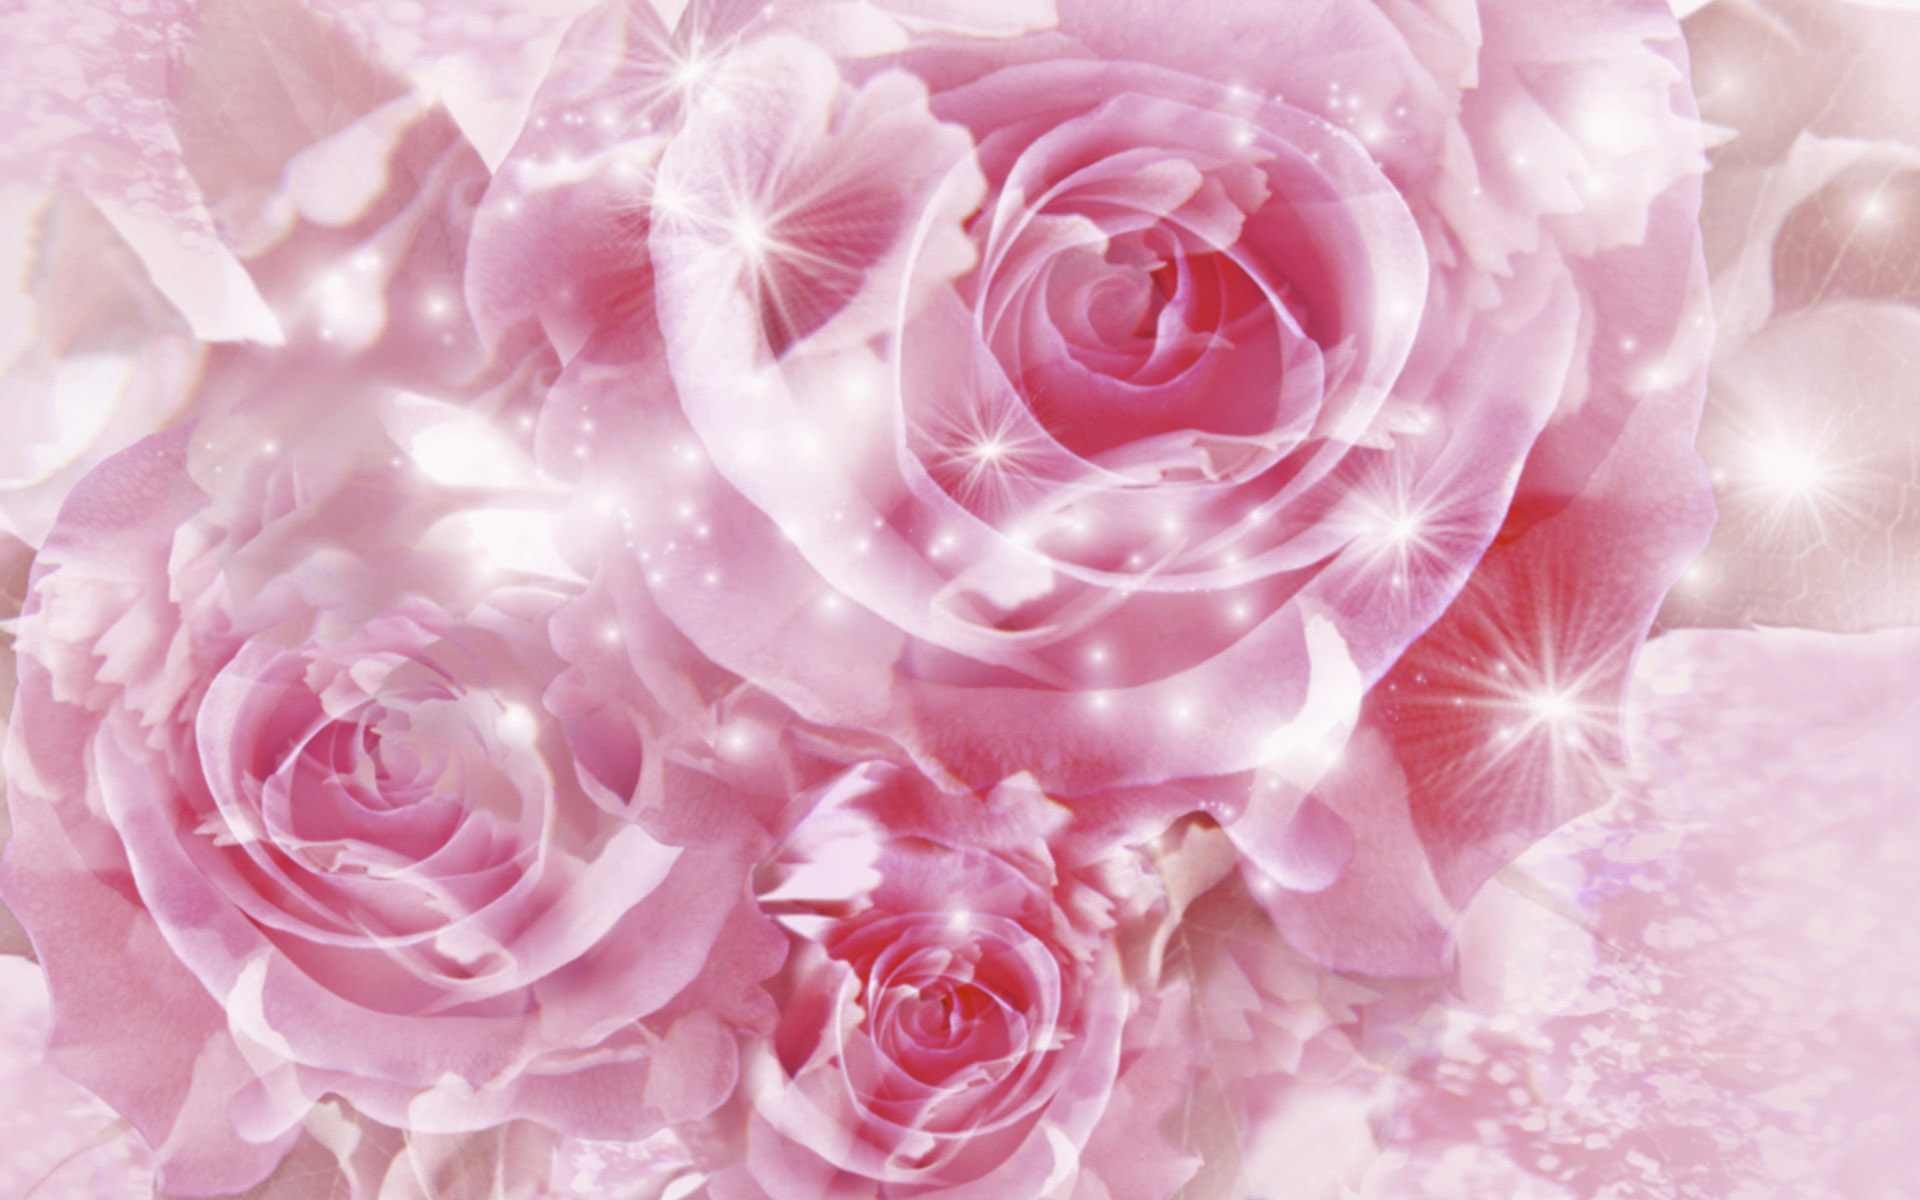 Beautiful Pink RosesWallpapers